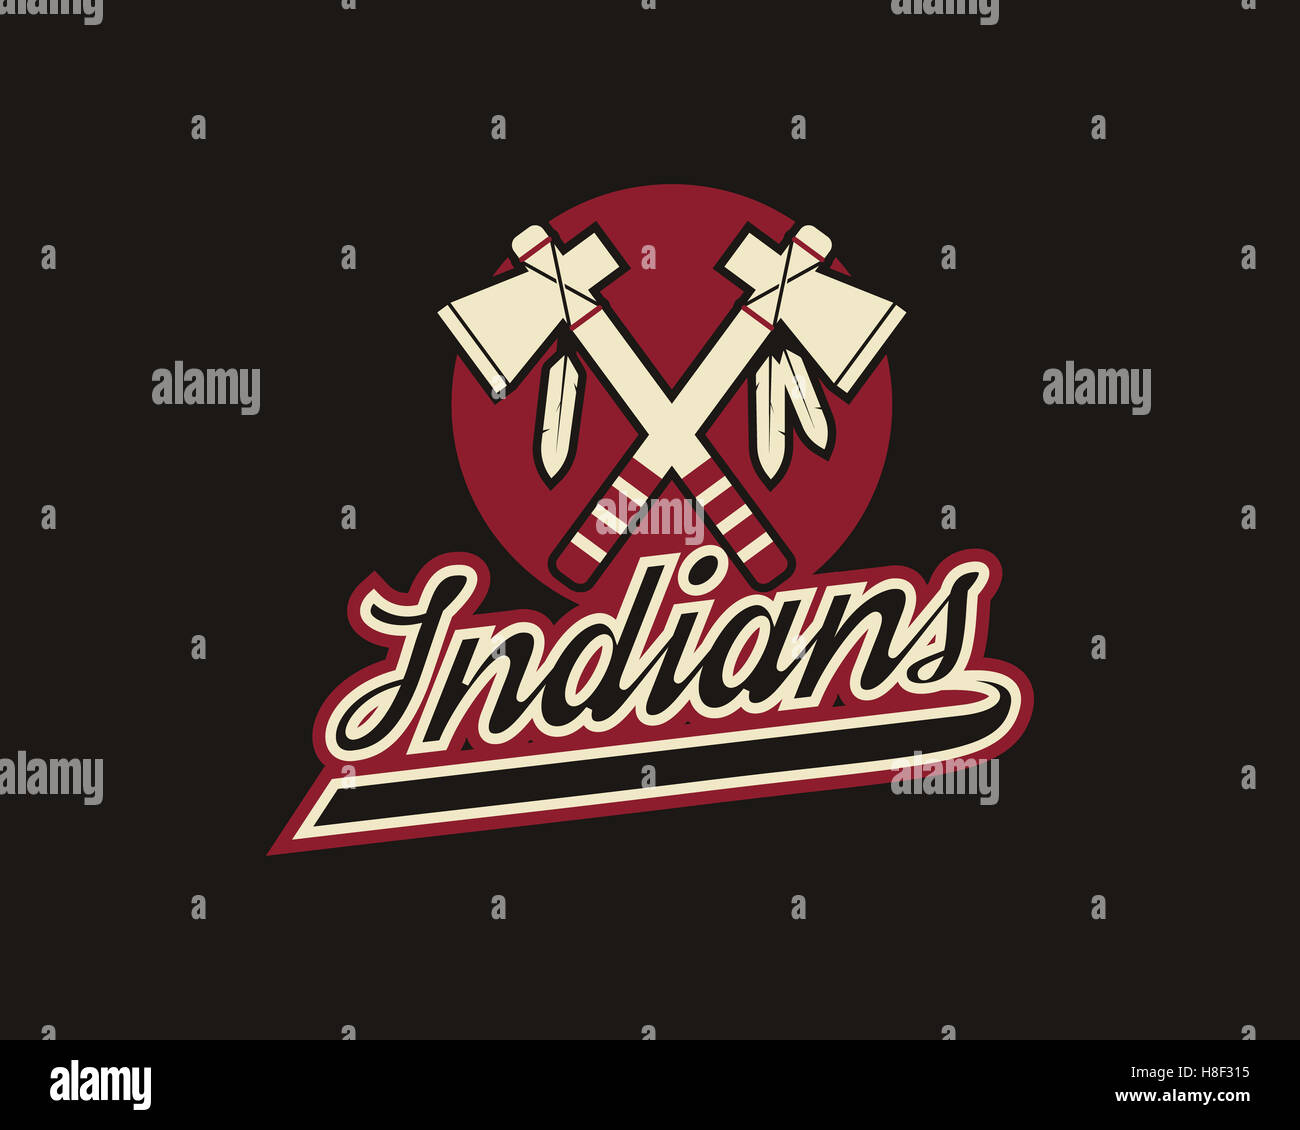 Cleveland Indians Logo Stock Illustrations – 17 Cleveland Indians Logo  Stock Illustrations, Vectors & Clipart - Dreamstime